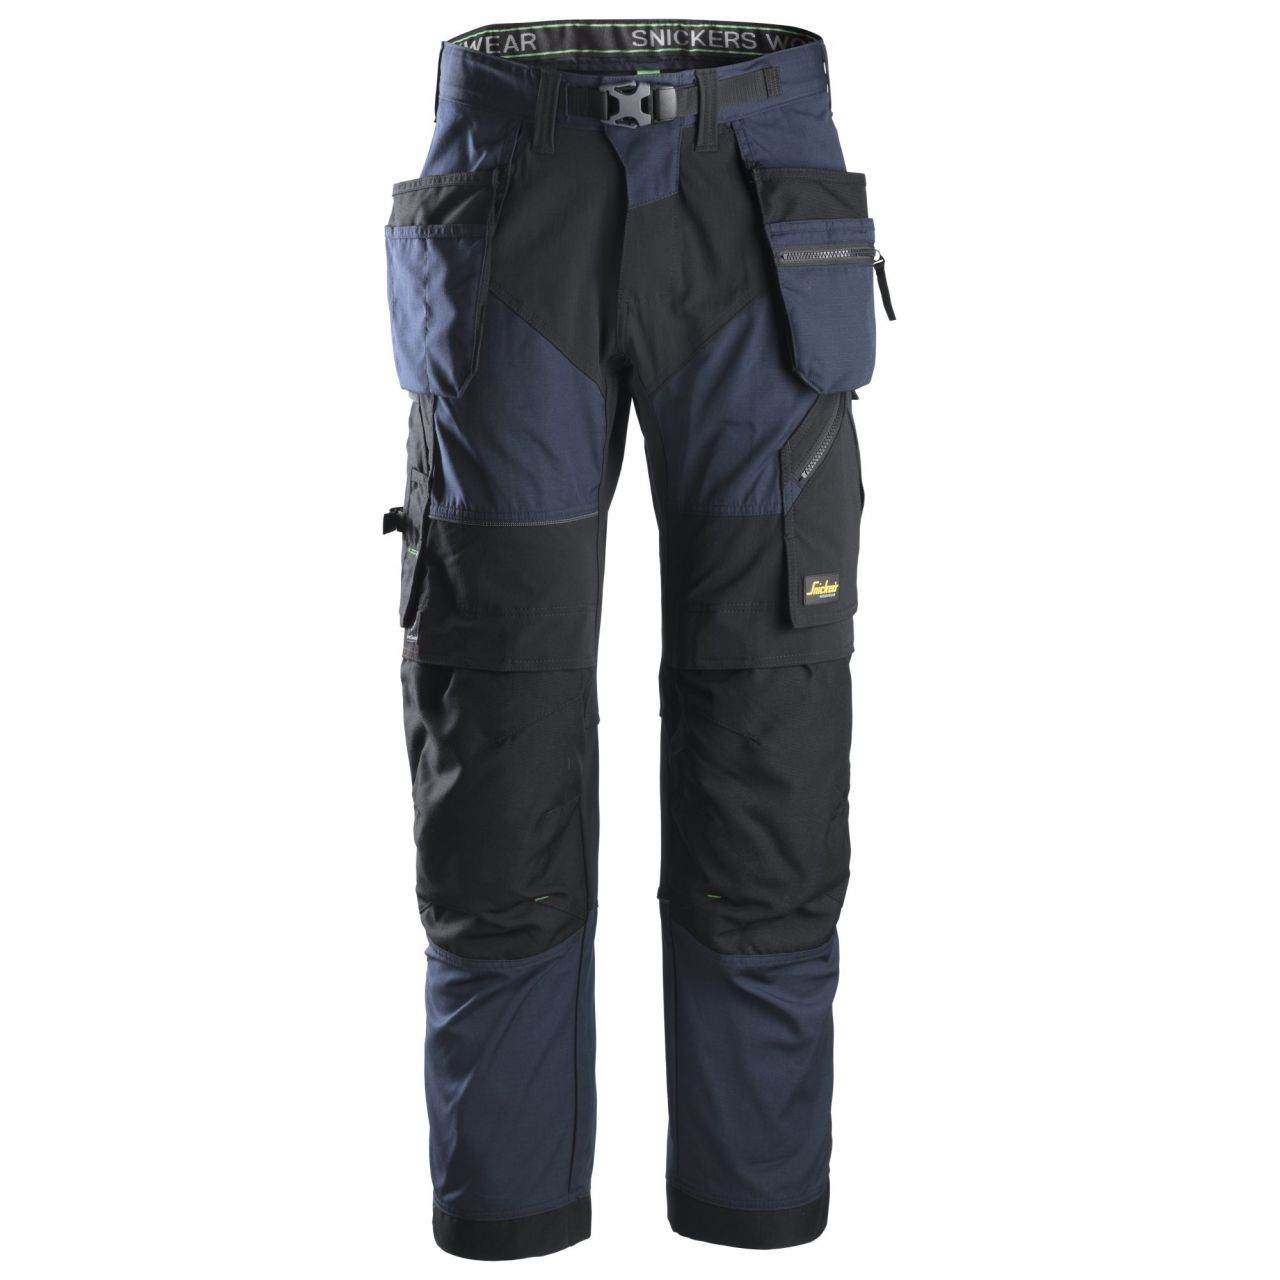 6902 Pantalón largo FlexiWork+ con bolsillos flotantes azul marino-negro talla 64